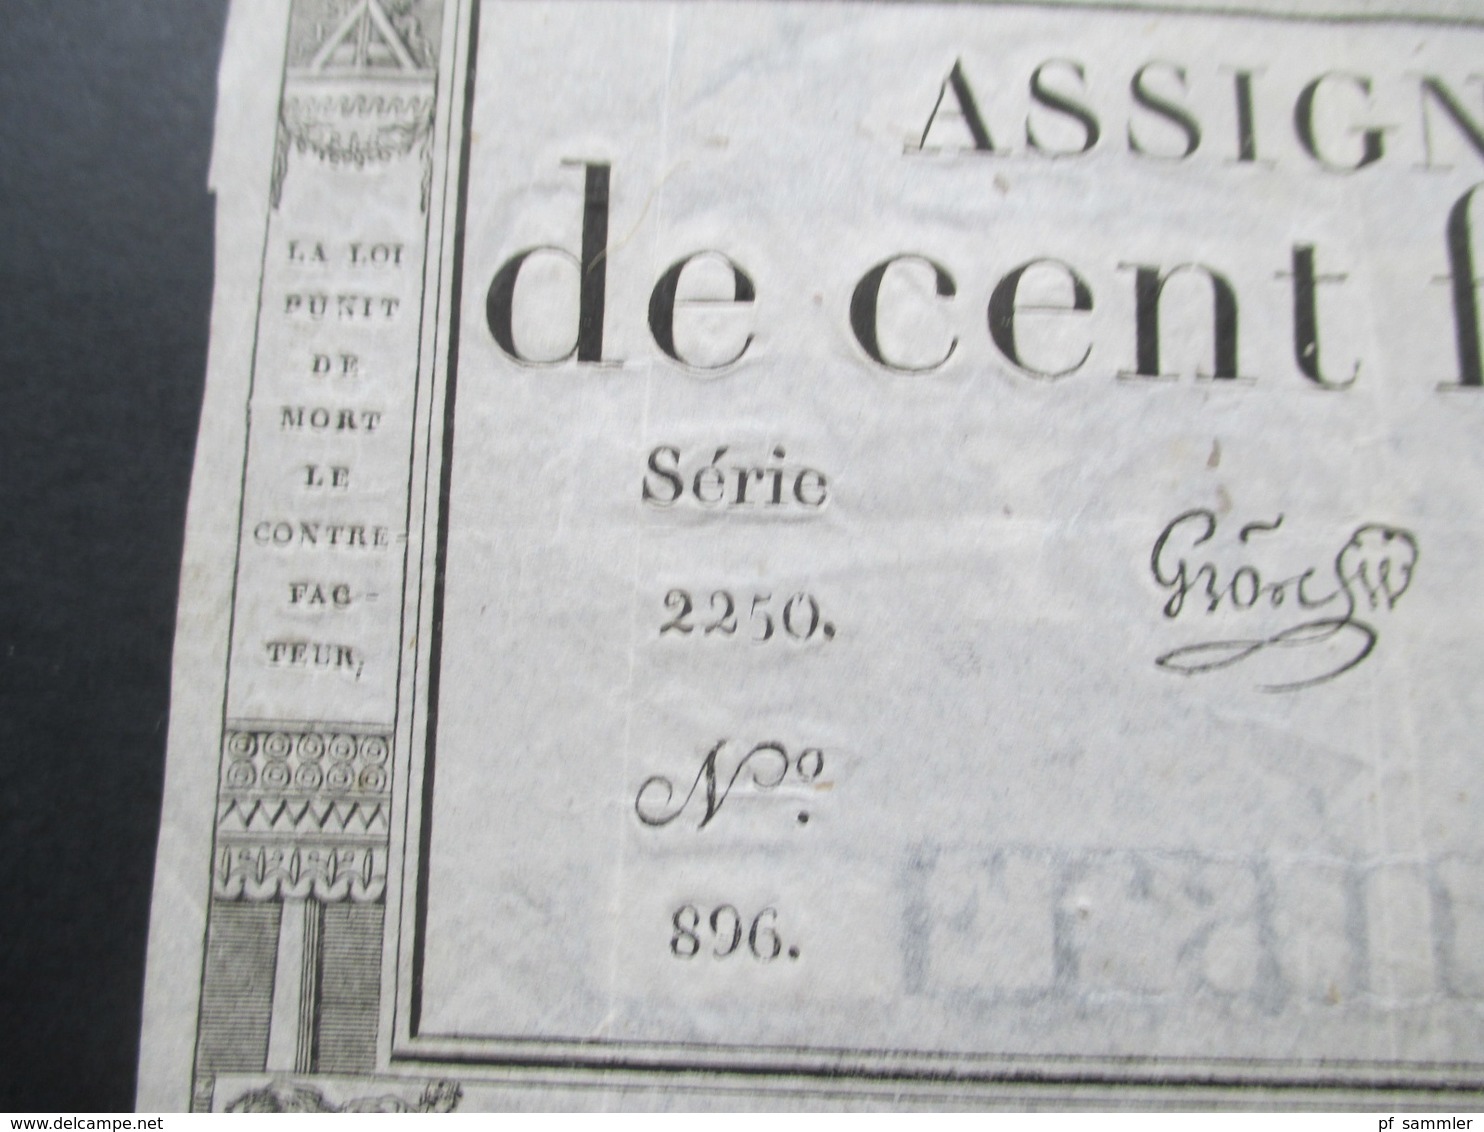 Frankreich Assignat De Cent Francs Serie 2250 No 896. Cree Le 18 Nivose L'an 3e Republique Francaise - ...-1889 Tijdens De XIXde In Omloop